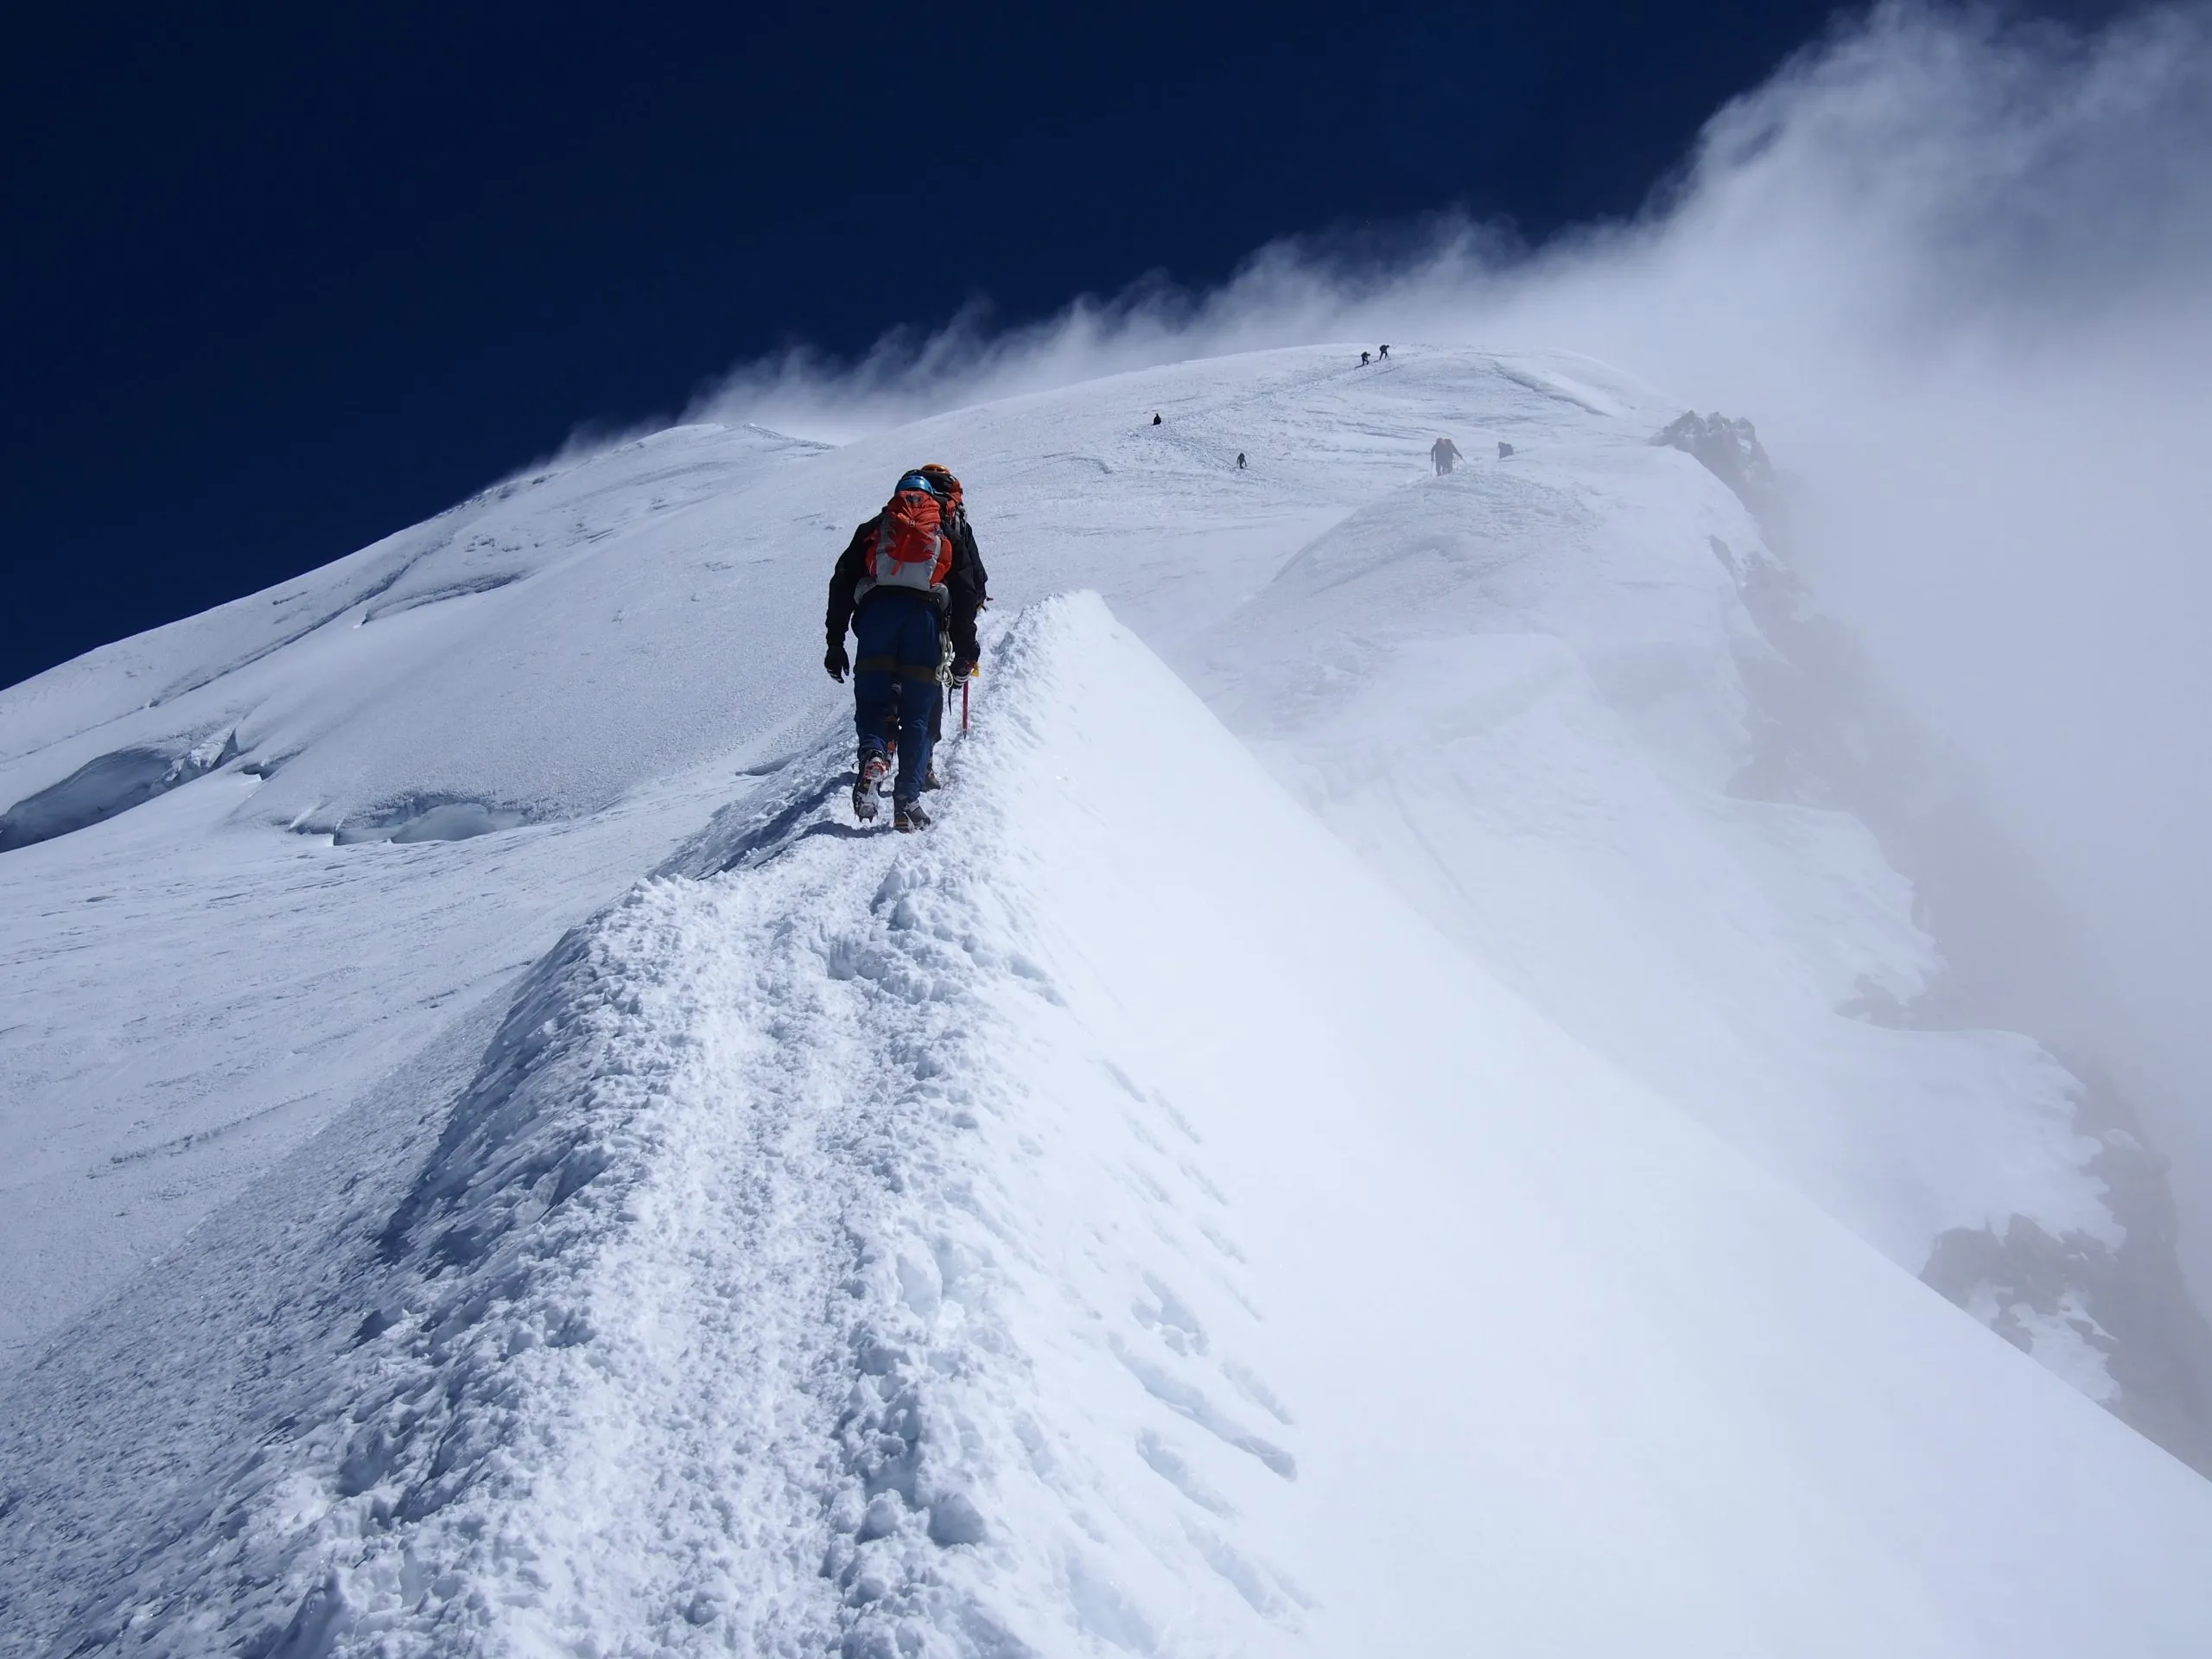 bergbeklimmers beklimmen mont blanc bergkam